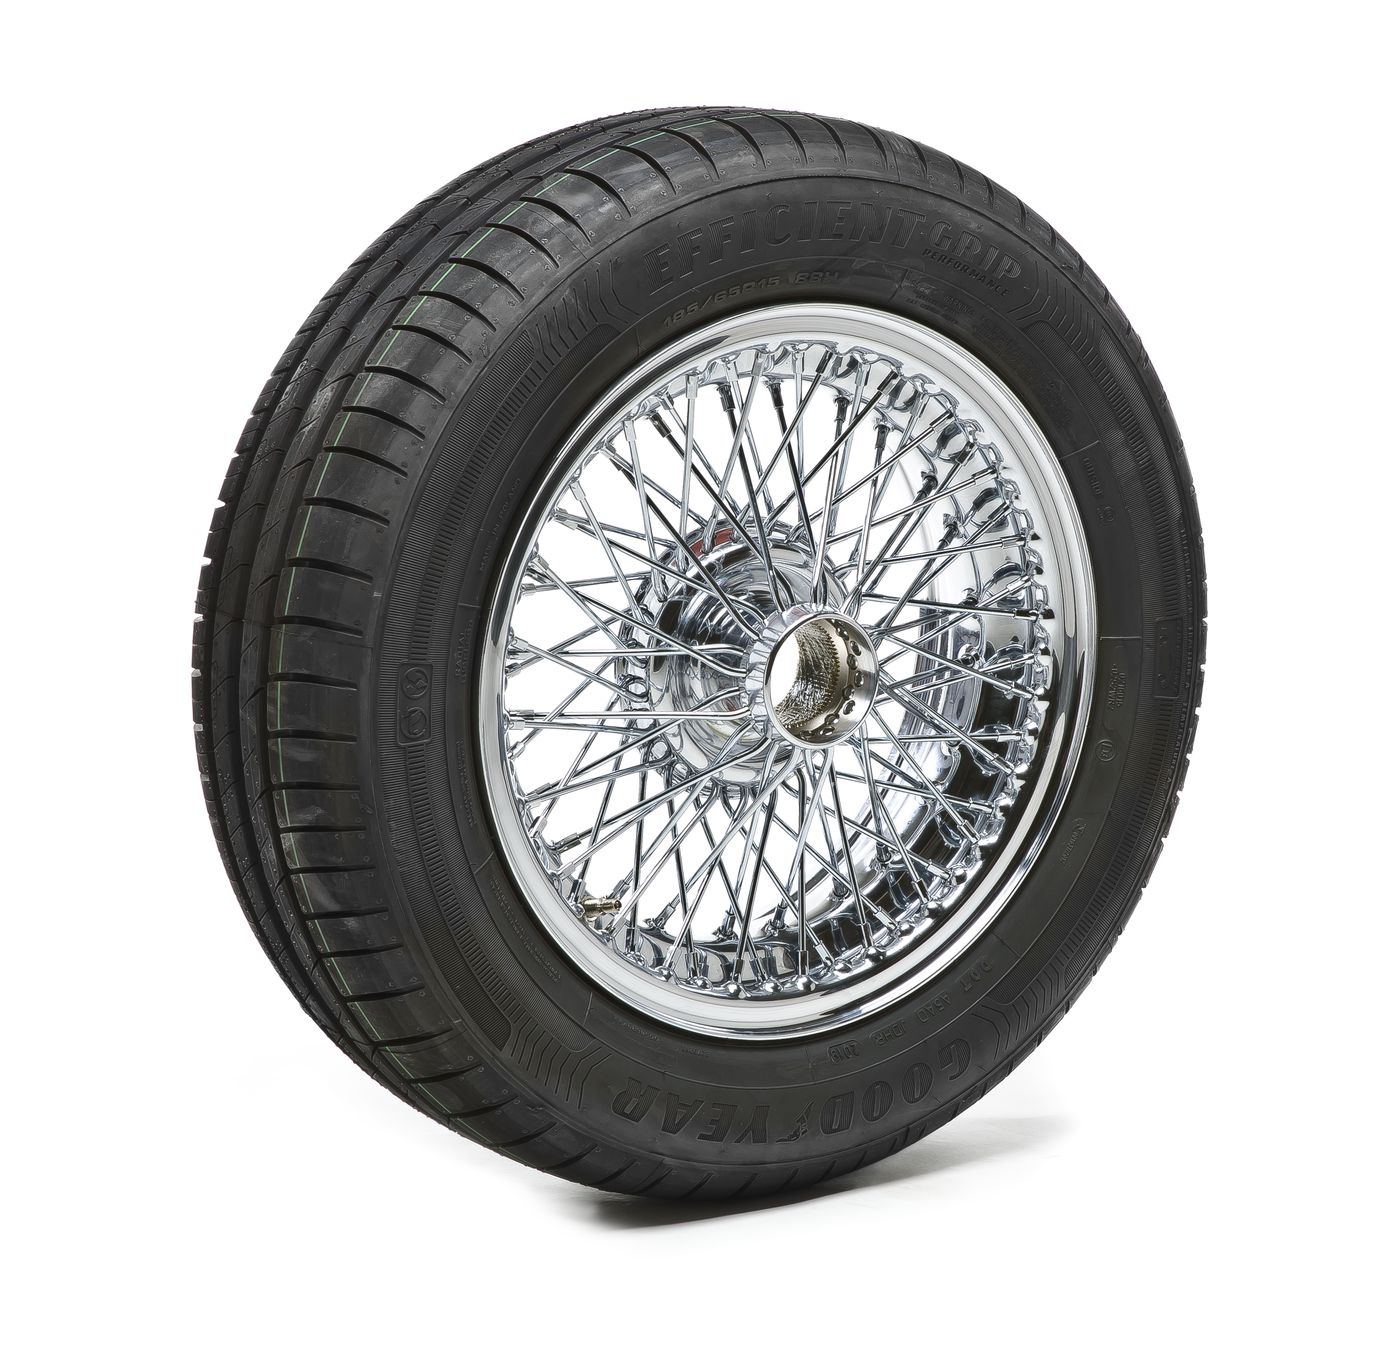 Komplettrad
Wheel package
Roue complète
Volledig wiel
Rueda com